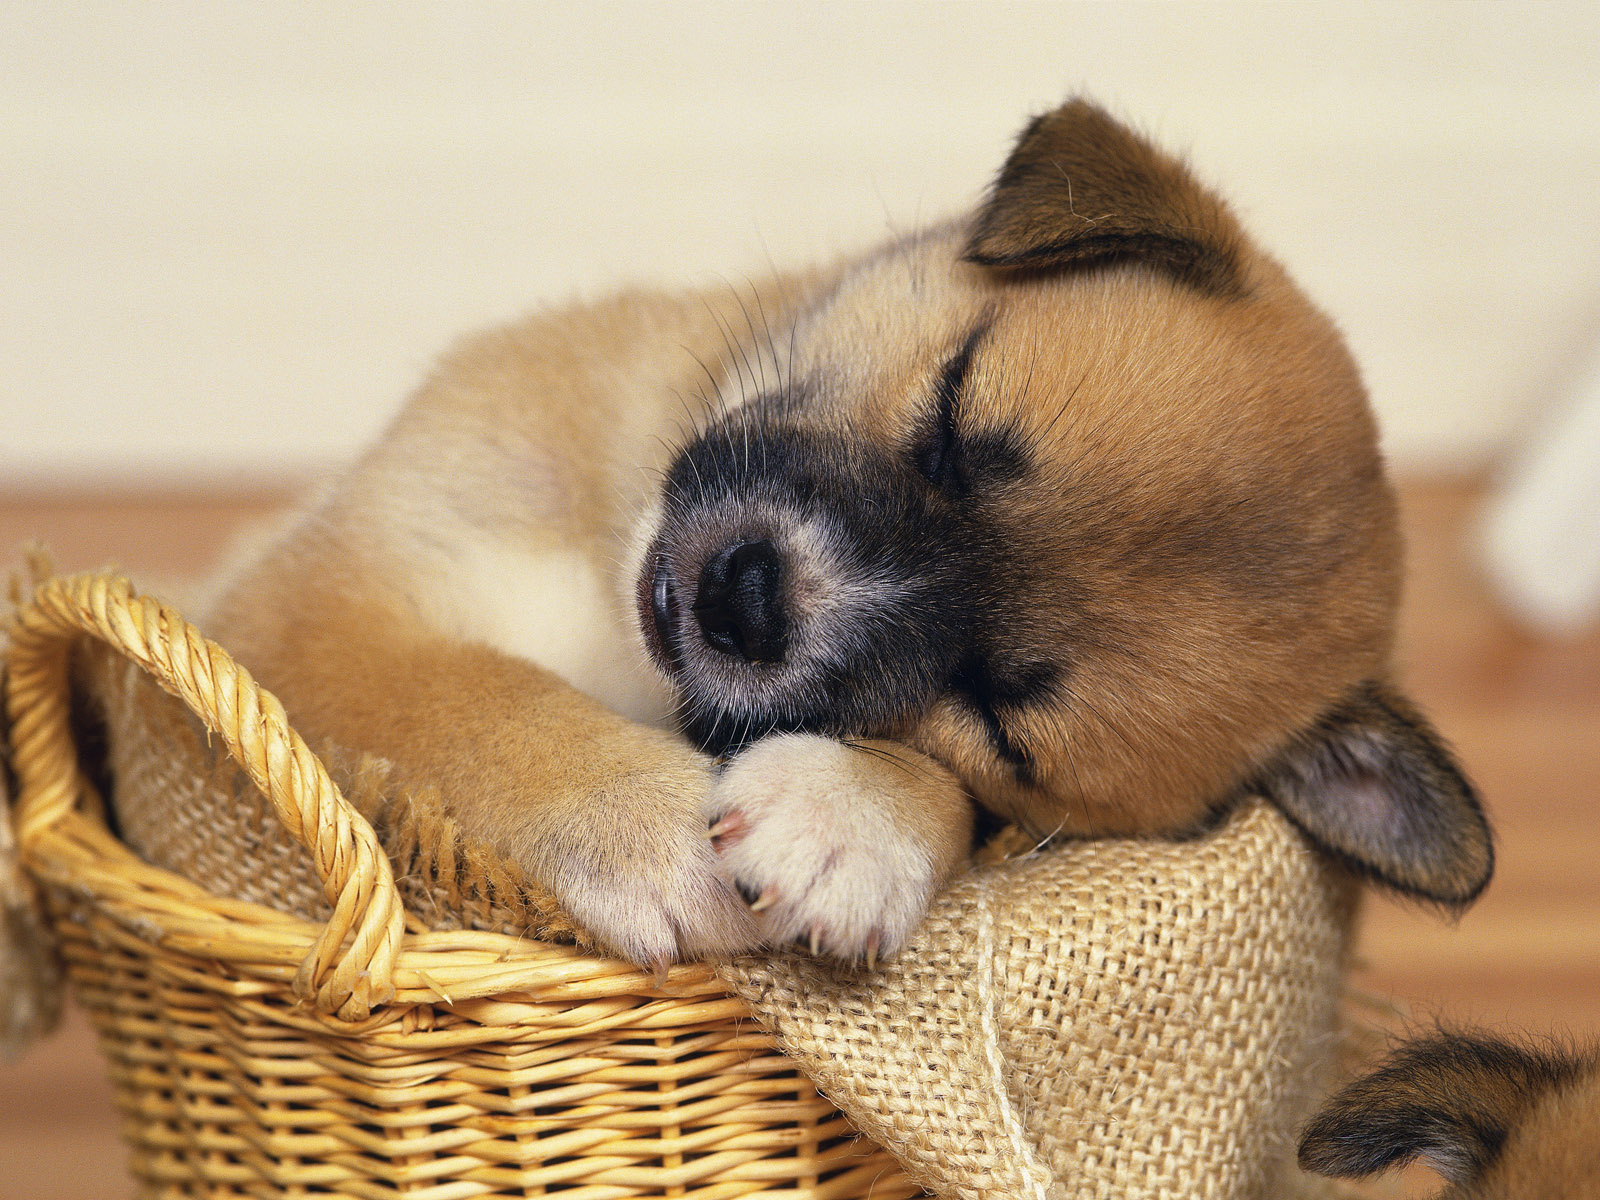 Puppy asleep in a basket